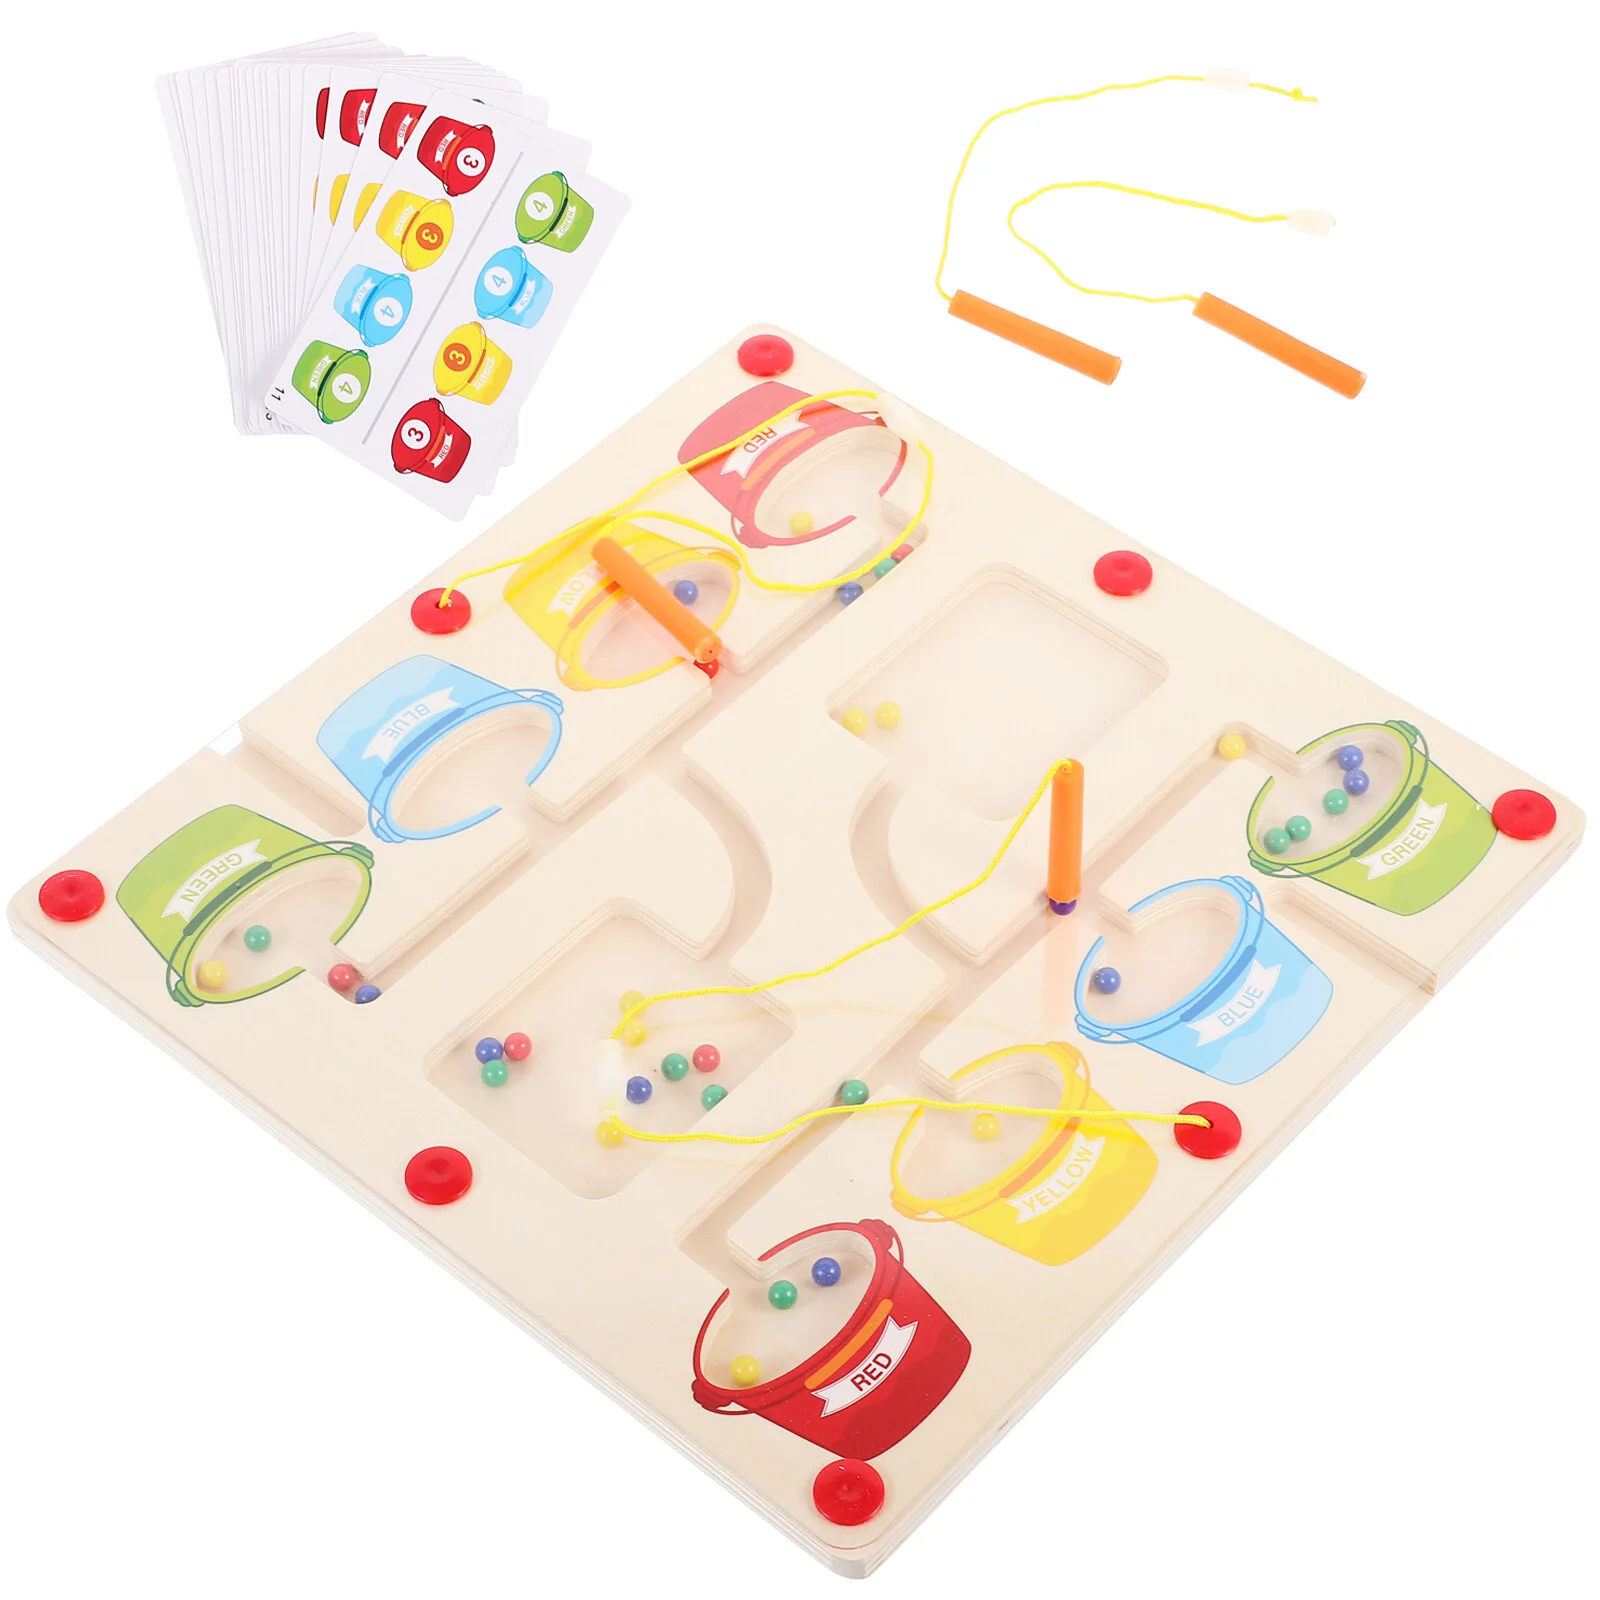 

Пазлы для малышей на возраст 2-4 года, магнитные игрушки, детская игрушка, сенсорная доска с цифрами, магнитная цветная игра, деревянные соответствующие